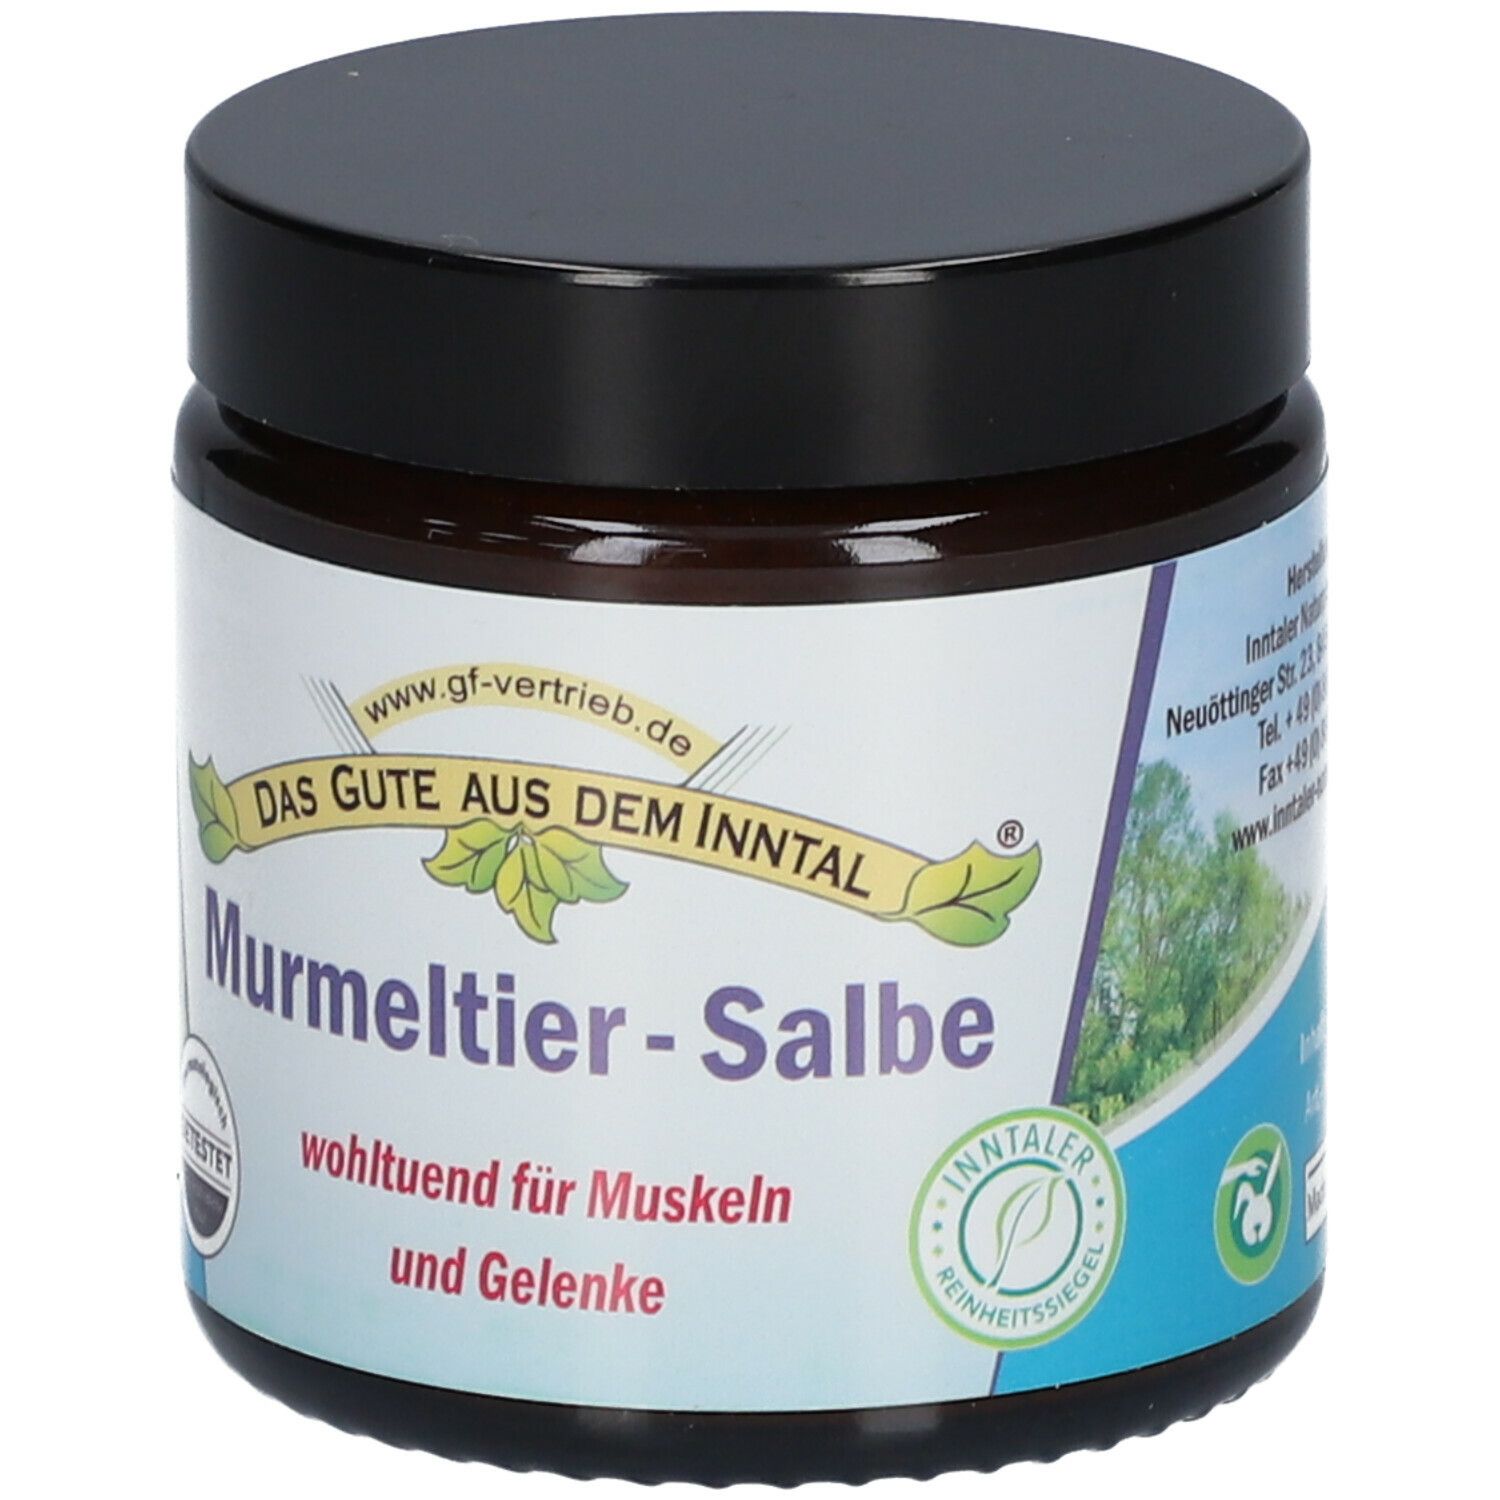 Murmeltier-Salbe